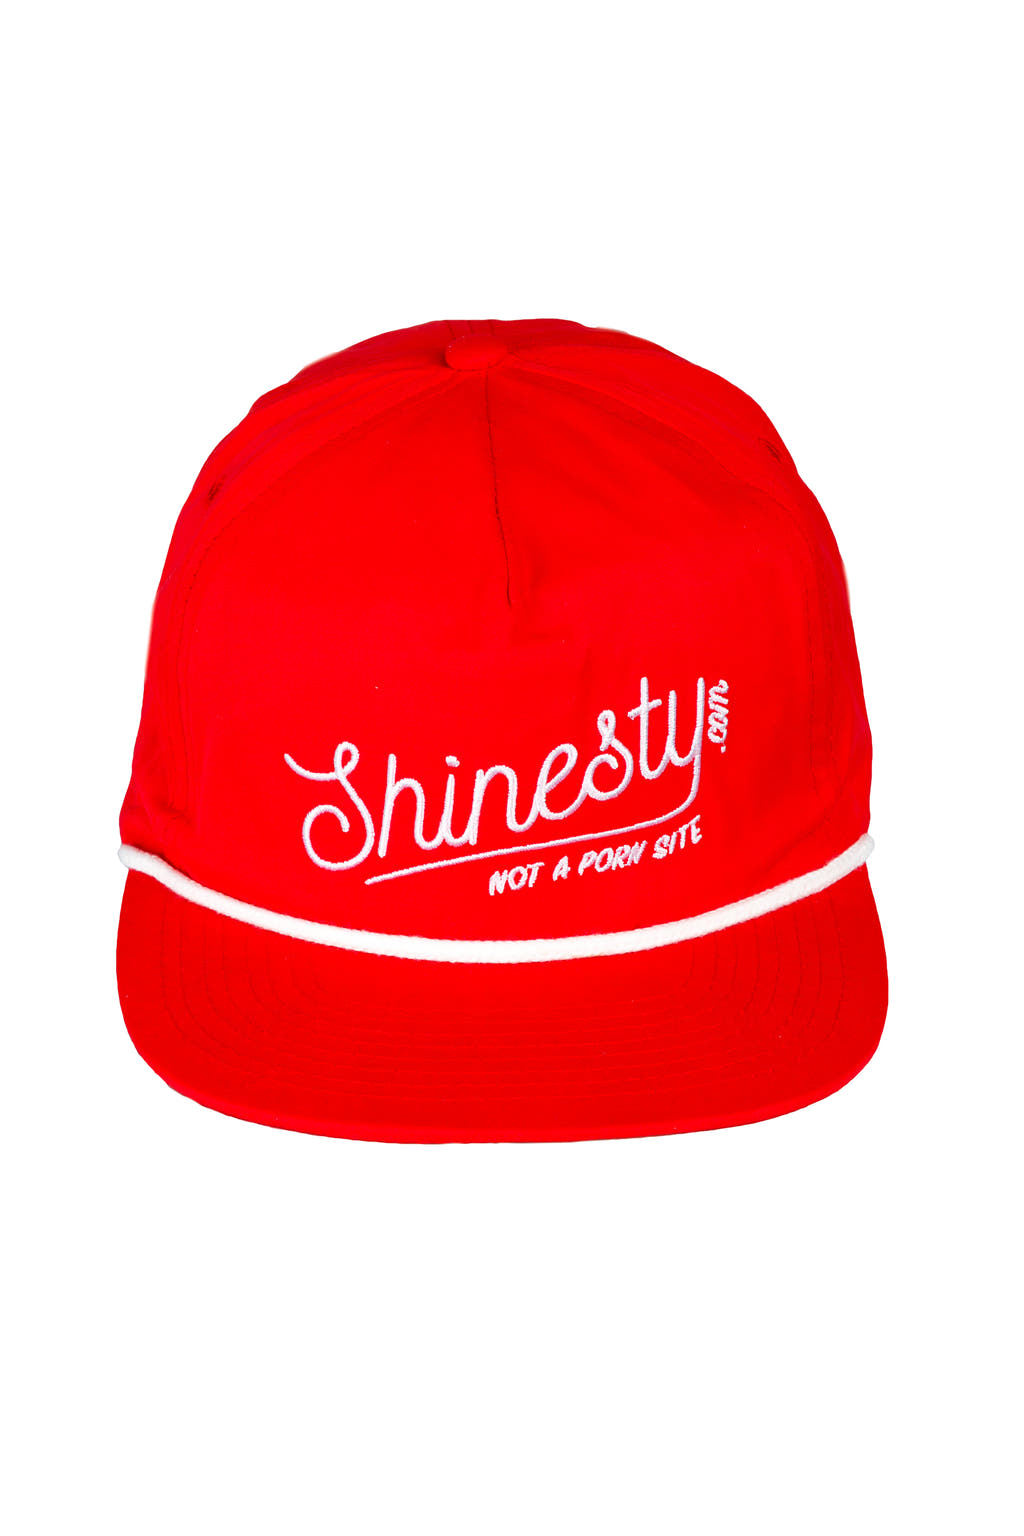 Not a porn site shinesty snapback hat 